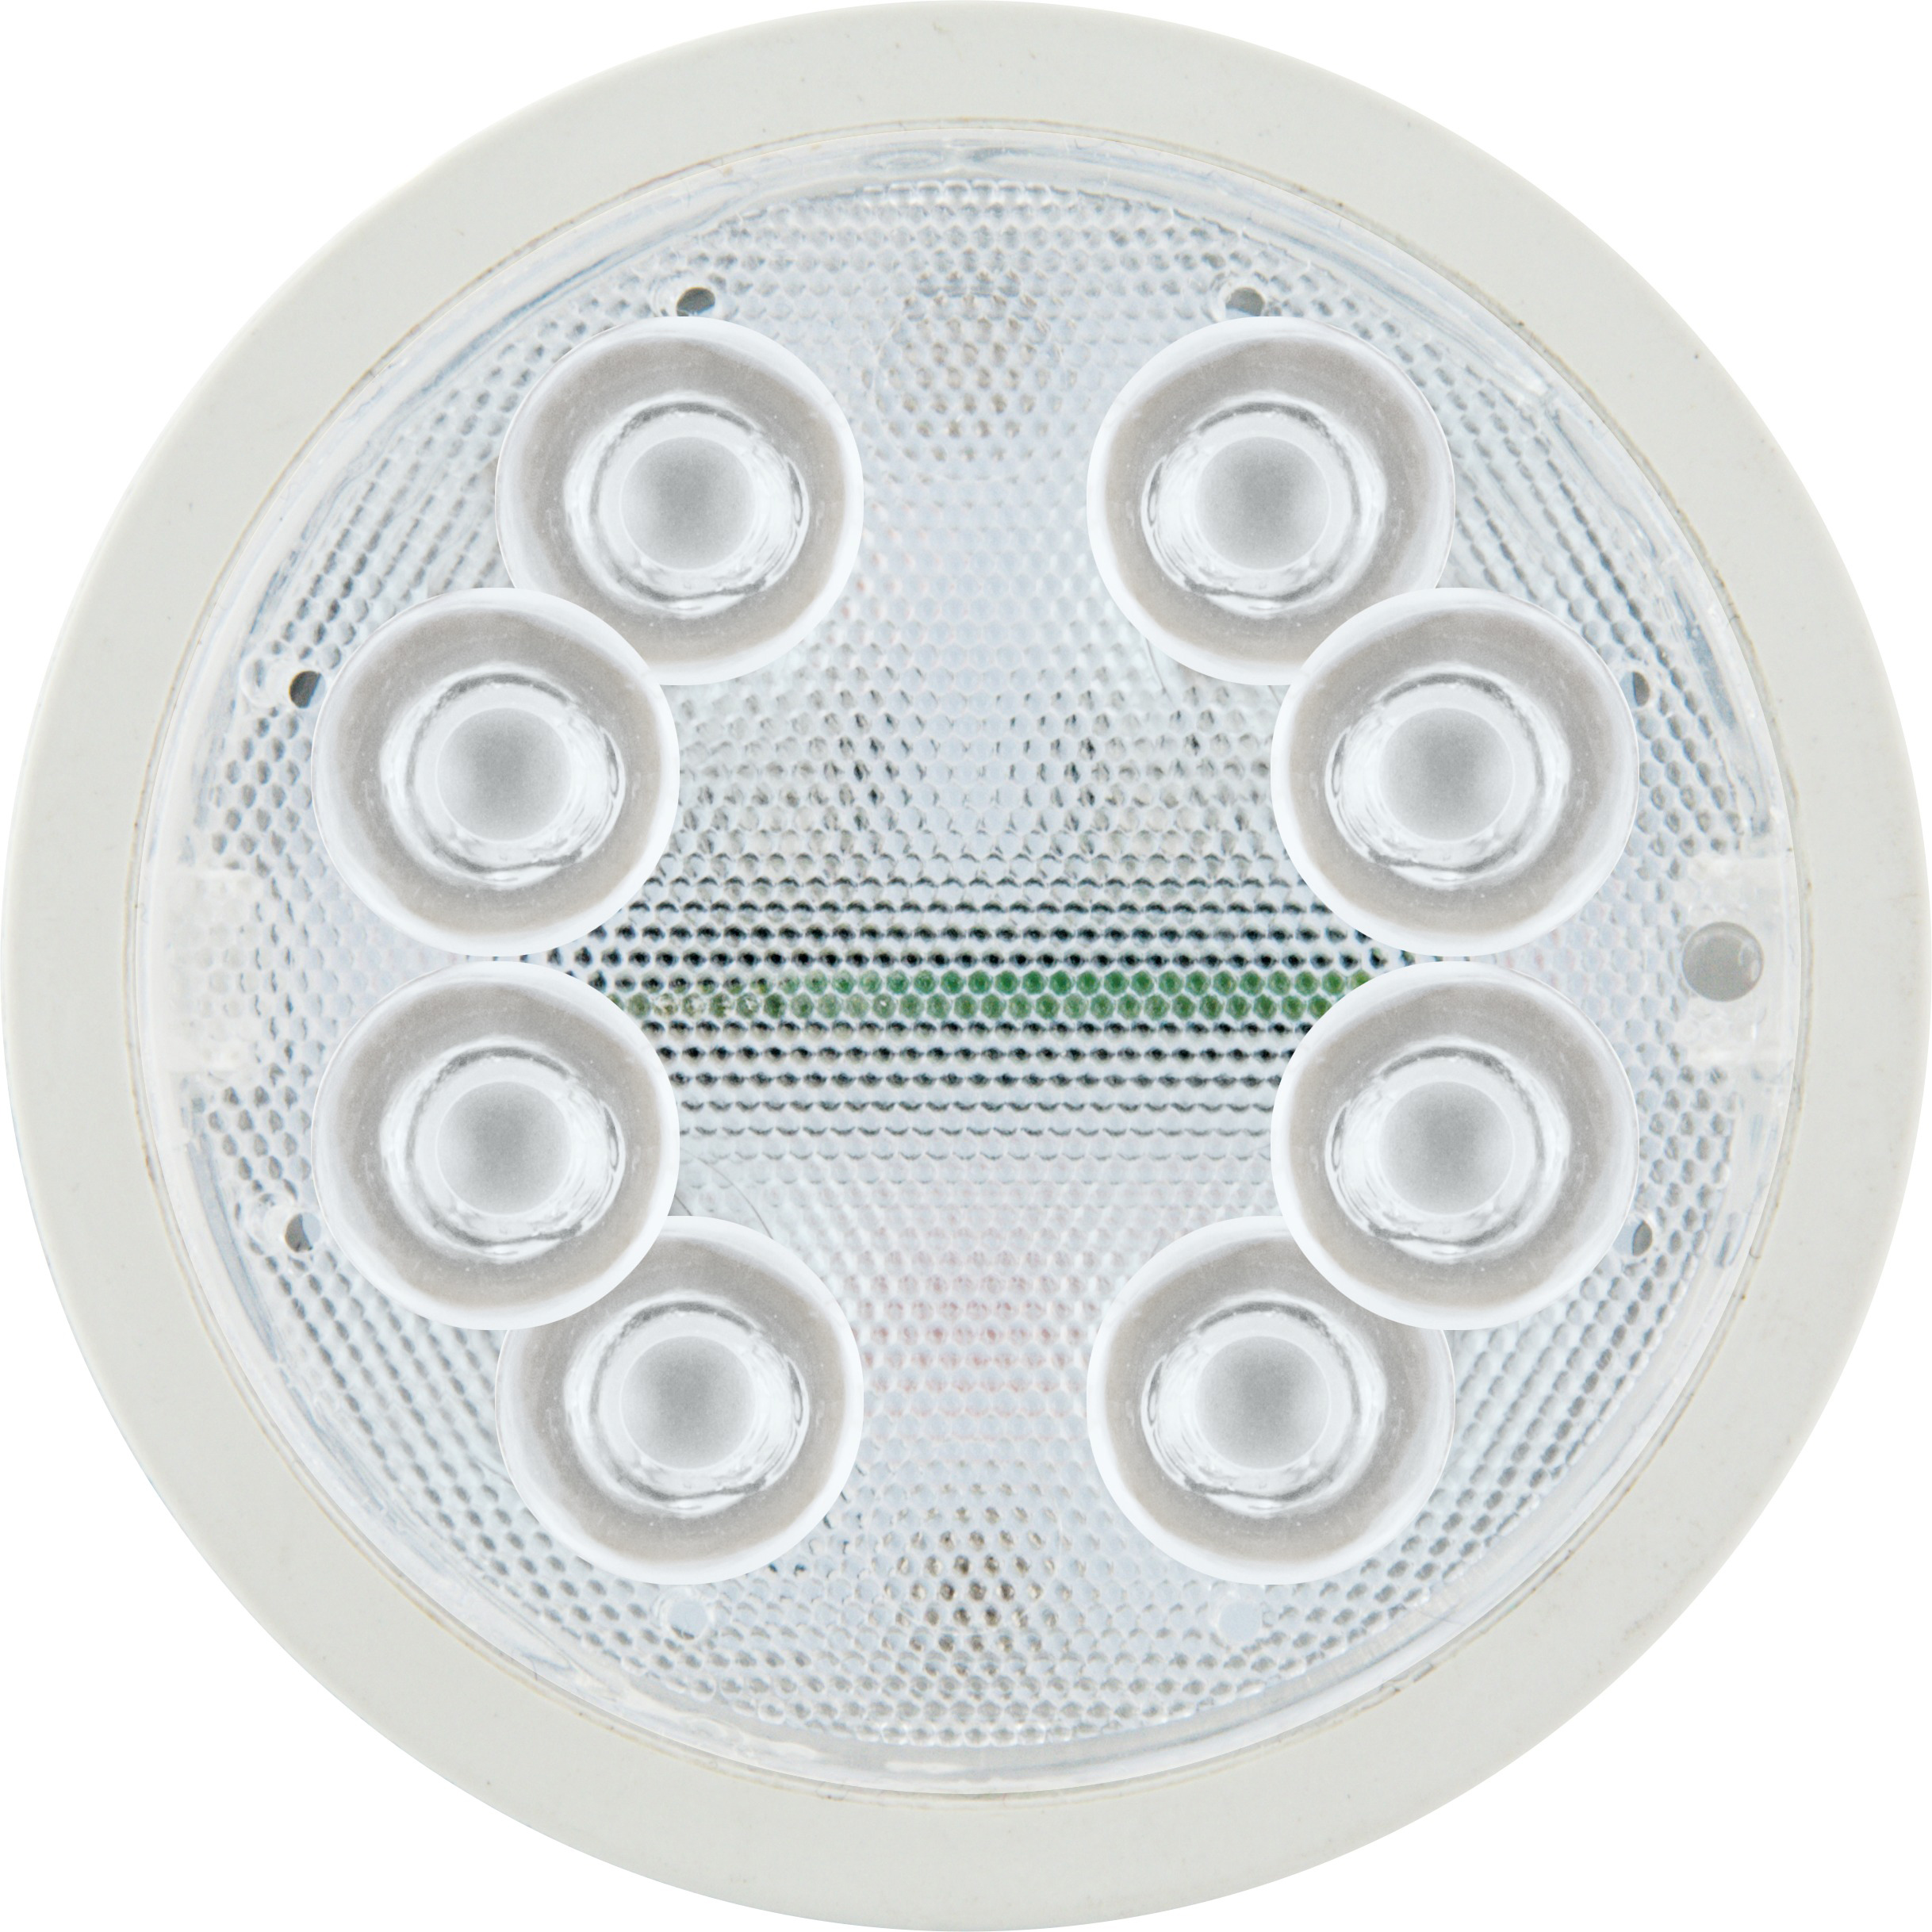 SCHWAIGER -HALSET500- Set (GU10) dimmbares LED Leuchtmittel Warm/Neutral/Kaltweiß als Akzentlicht